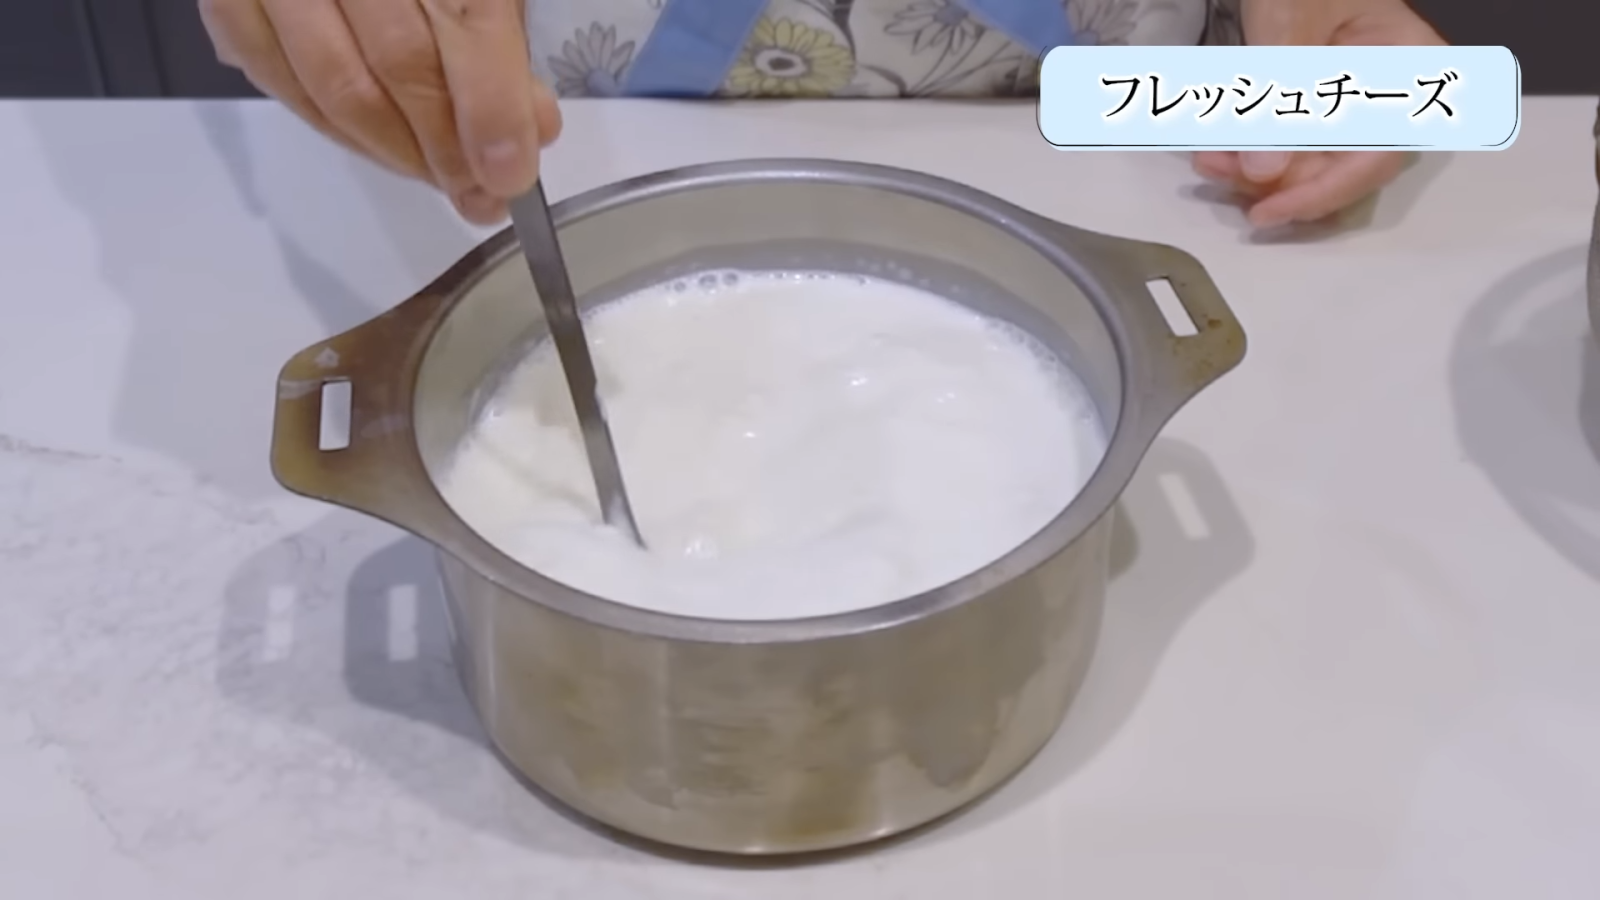 鍋に入れた牛乳とプレーンヨーグルトを混ぜ合わせる女性